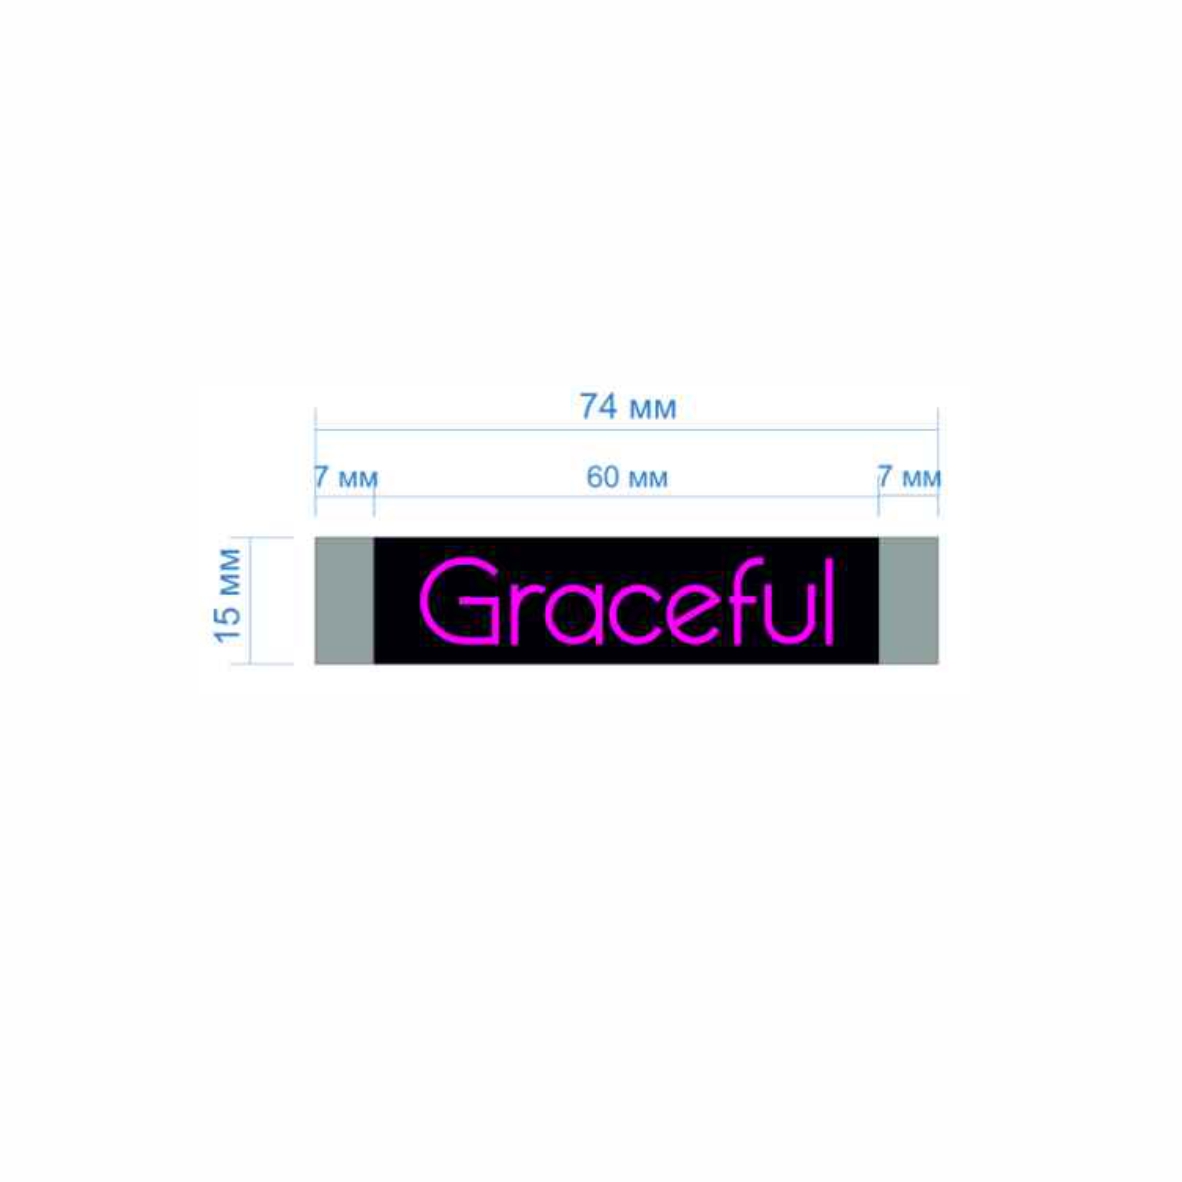 Этикетка тканевая Graceful 1,5см черная и лиловый лого /70 atki/, шт. Вышивка / этикетка тканевая